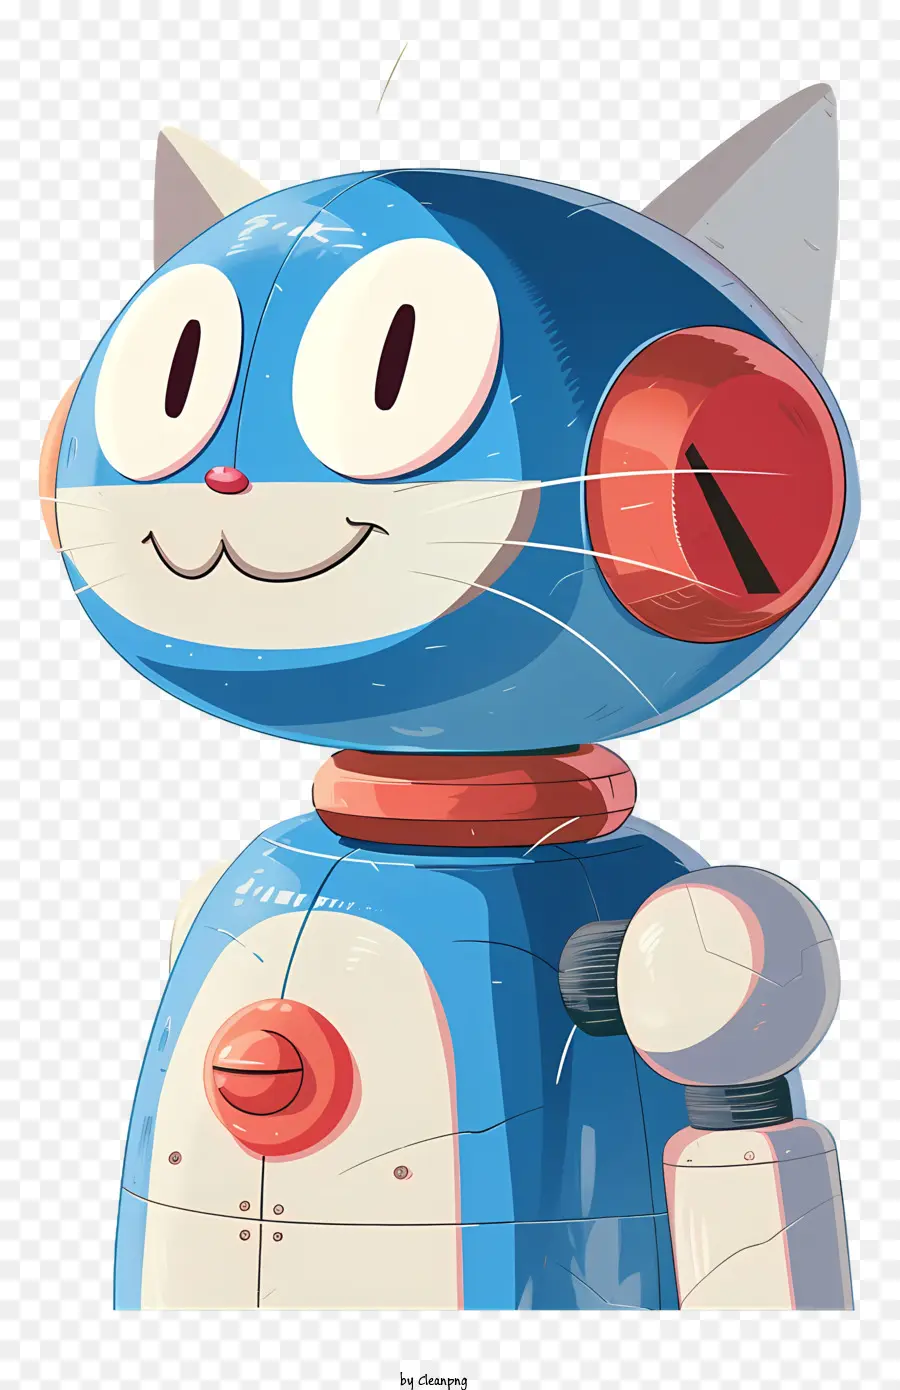 phim hoạt hình mèo - Phim hoạt hình mèo với mũ đỏ giữ búa, robot